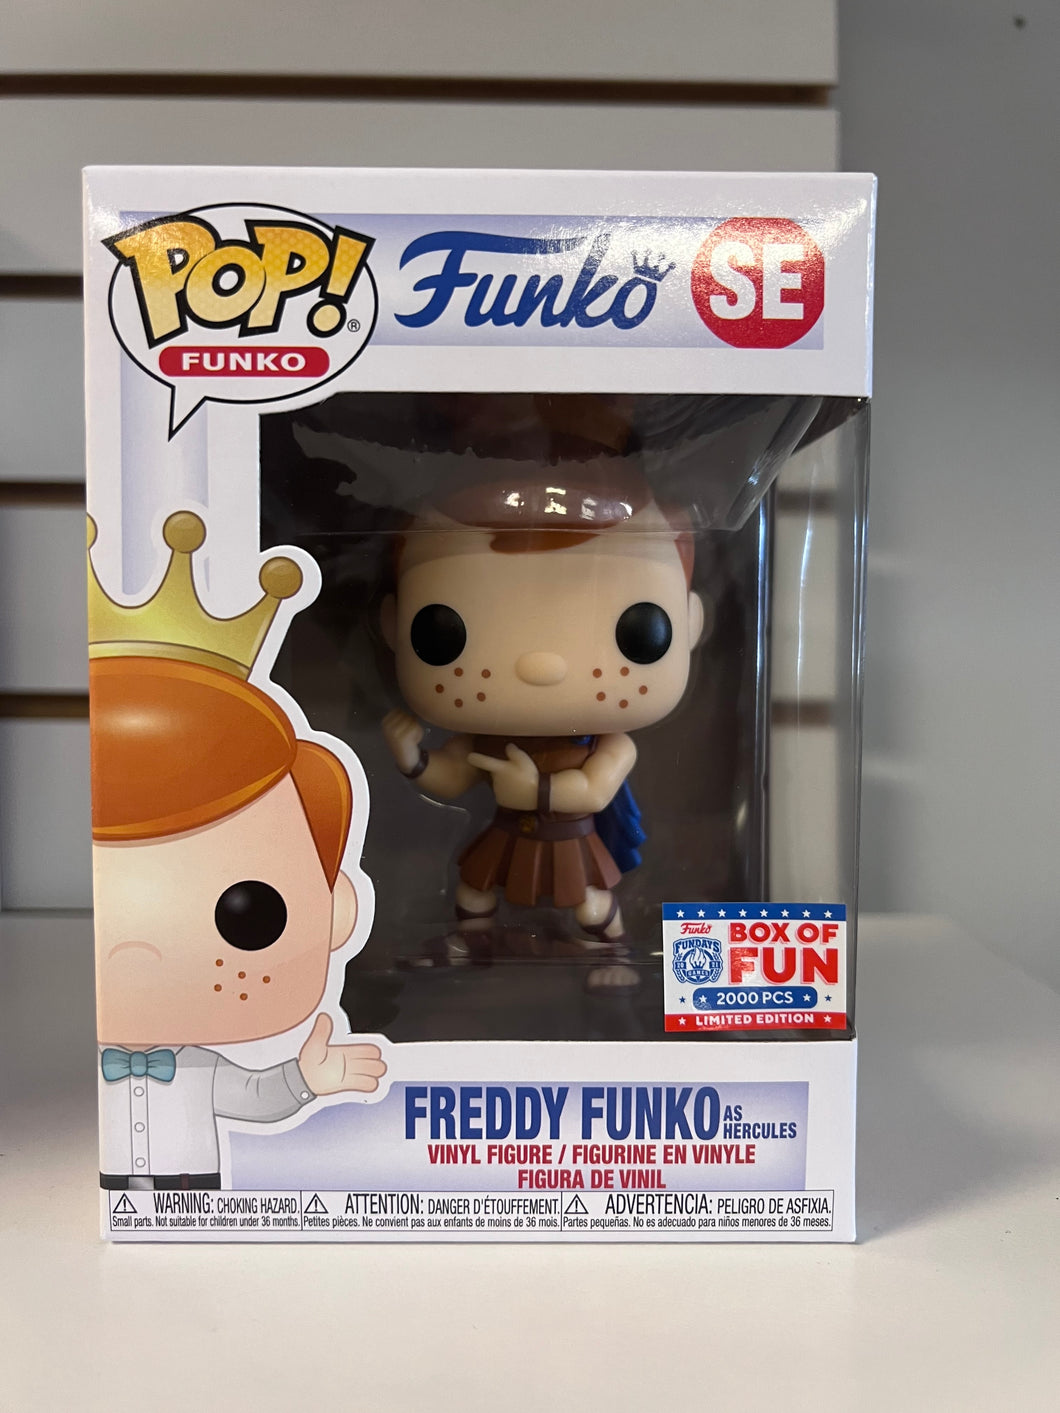 Funko Pop Freddy Funko as Hercules